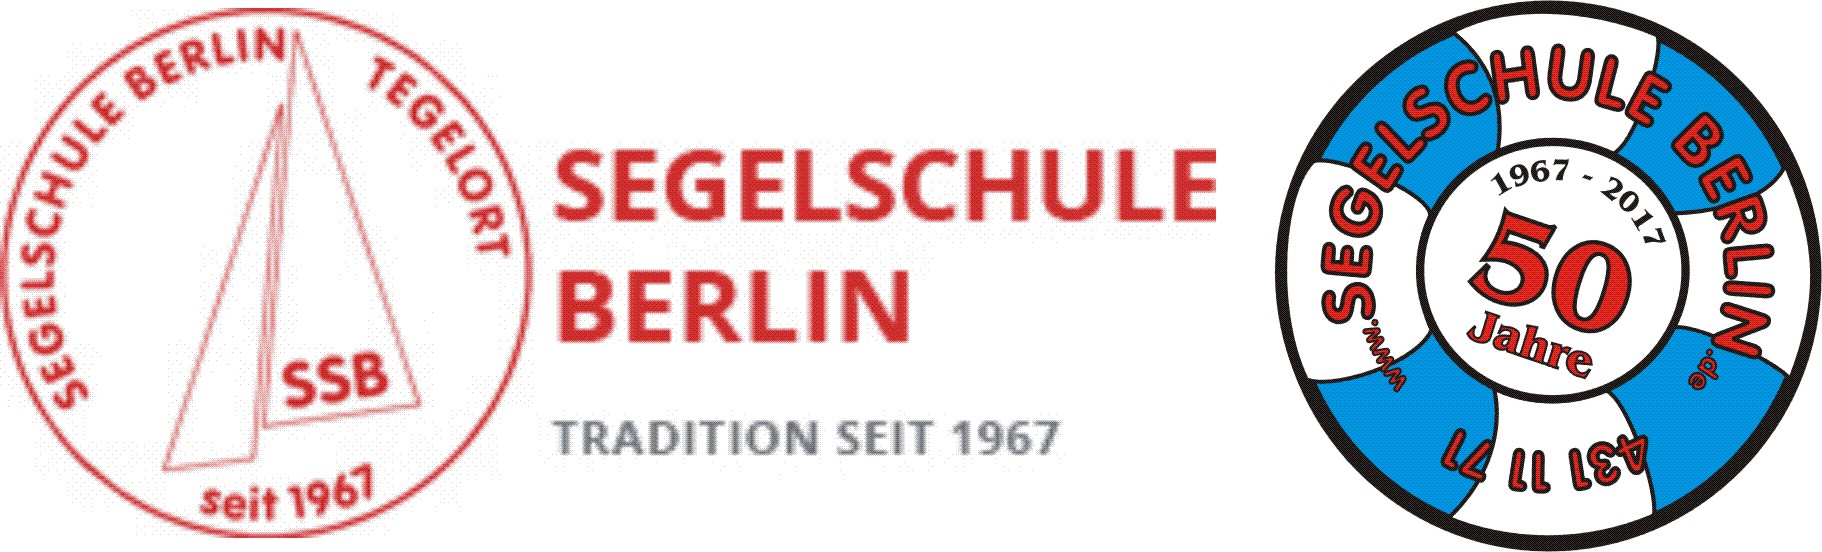 Segelschule Berlin